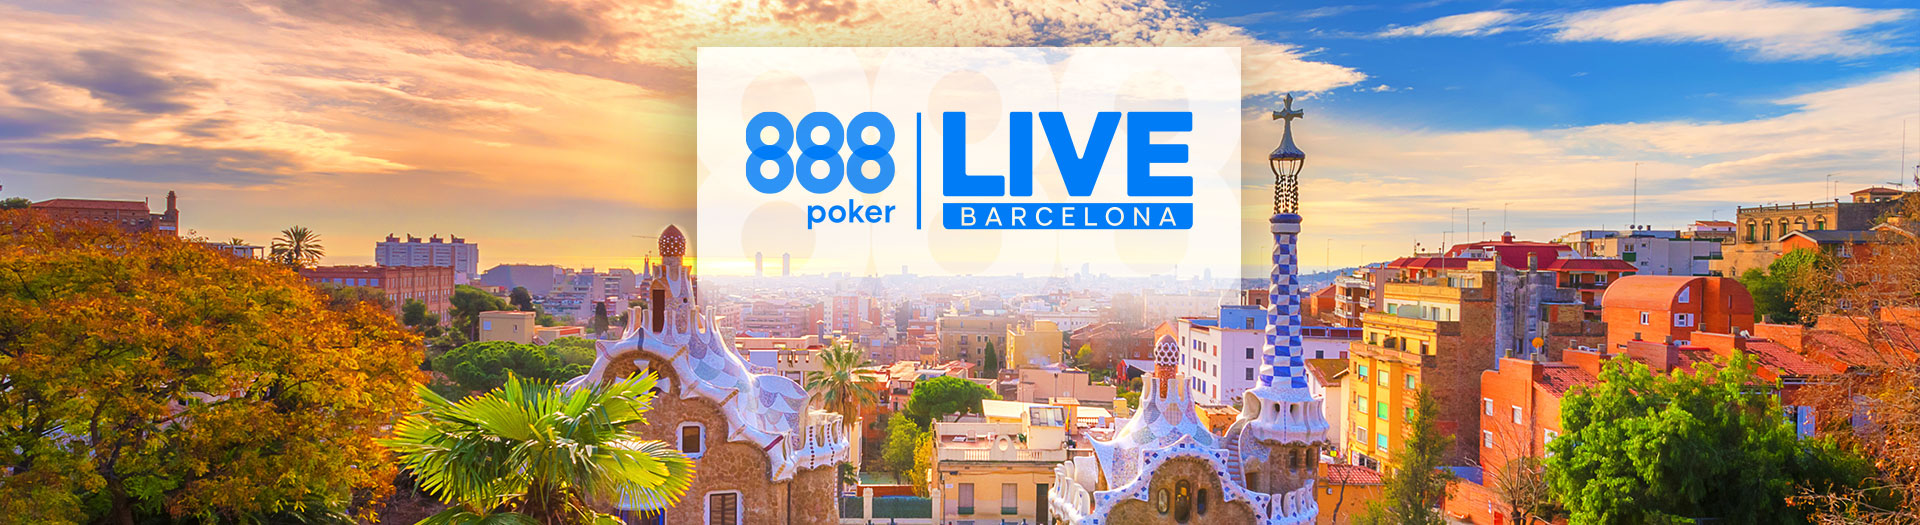 Live-Barcelona-LP-image-1678106171889_tcm1530-581375